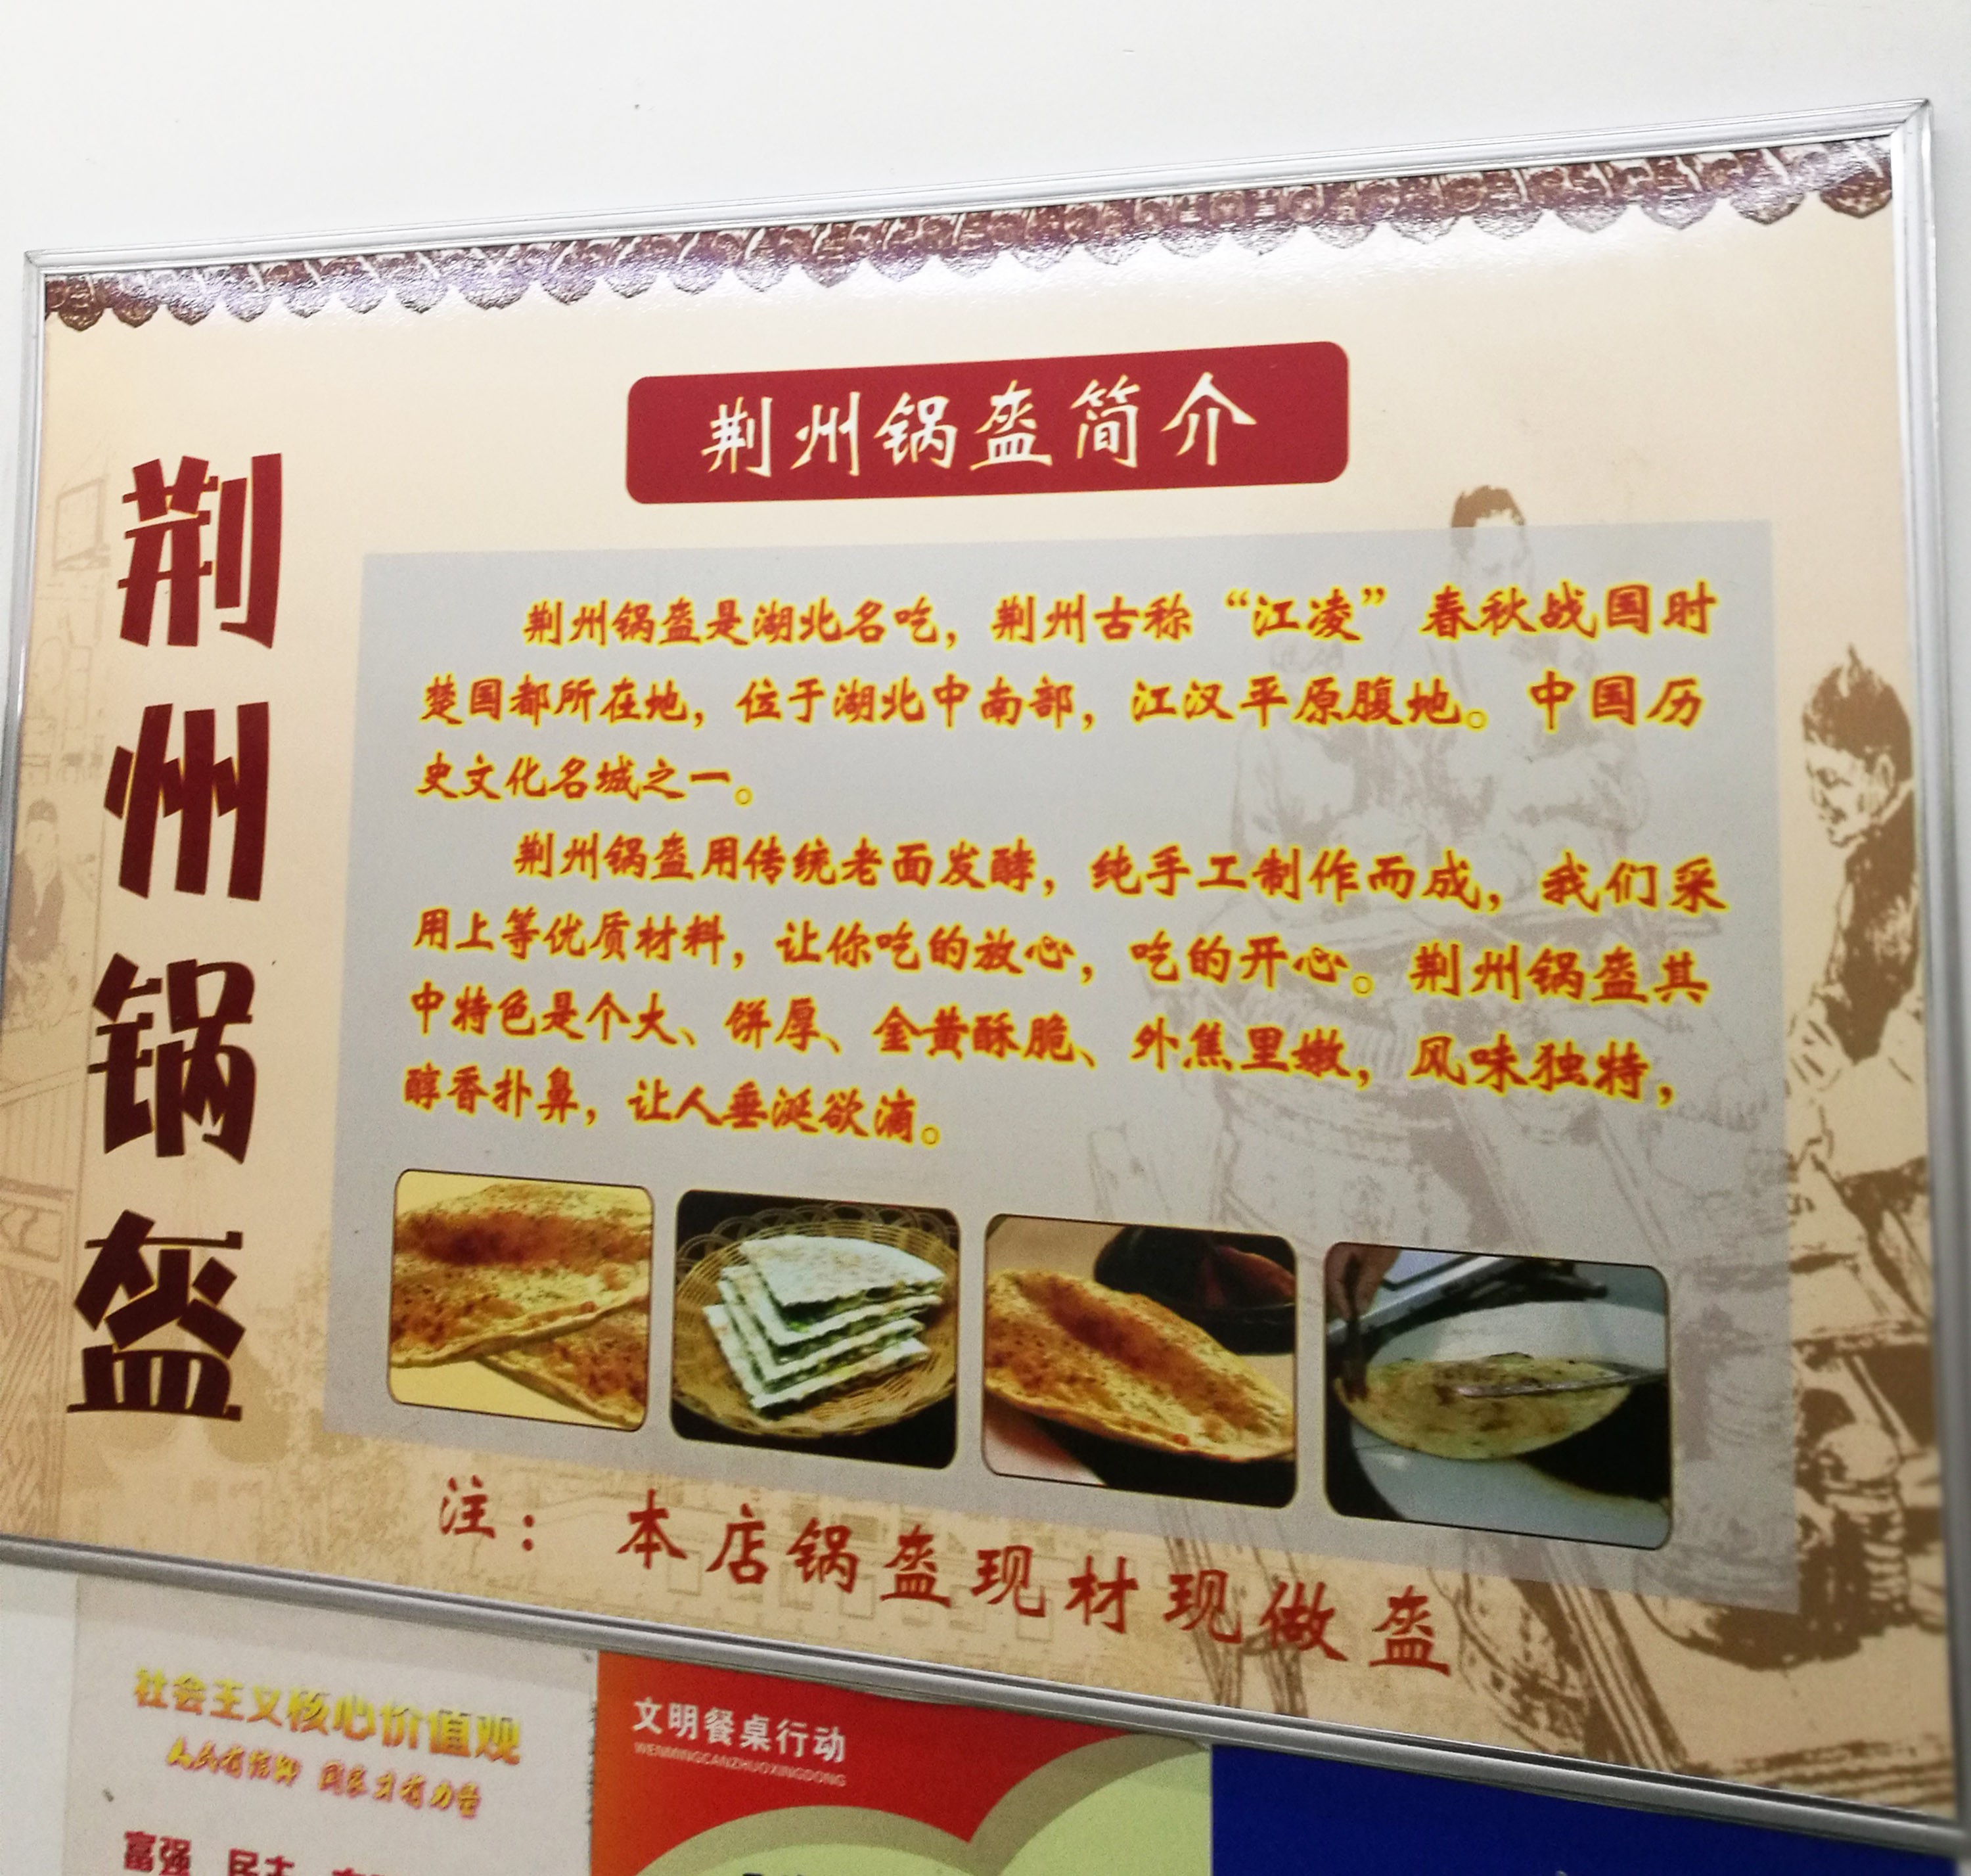 安徽合肥:荆州锅盔 牛肉面非常好吃